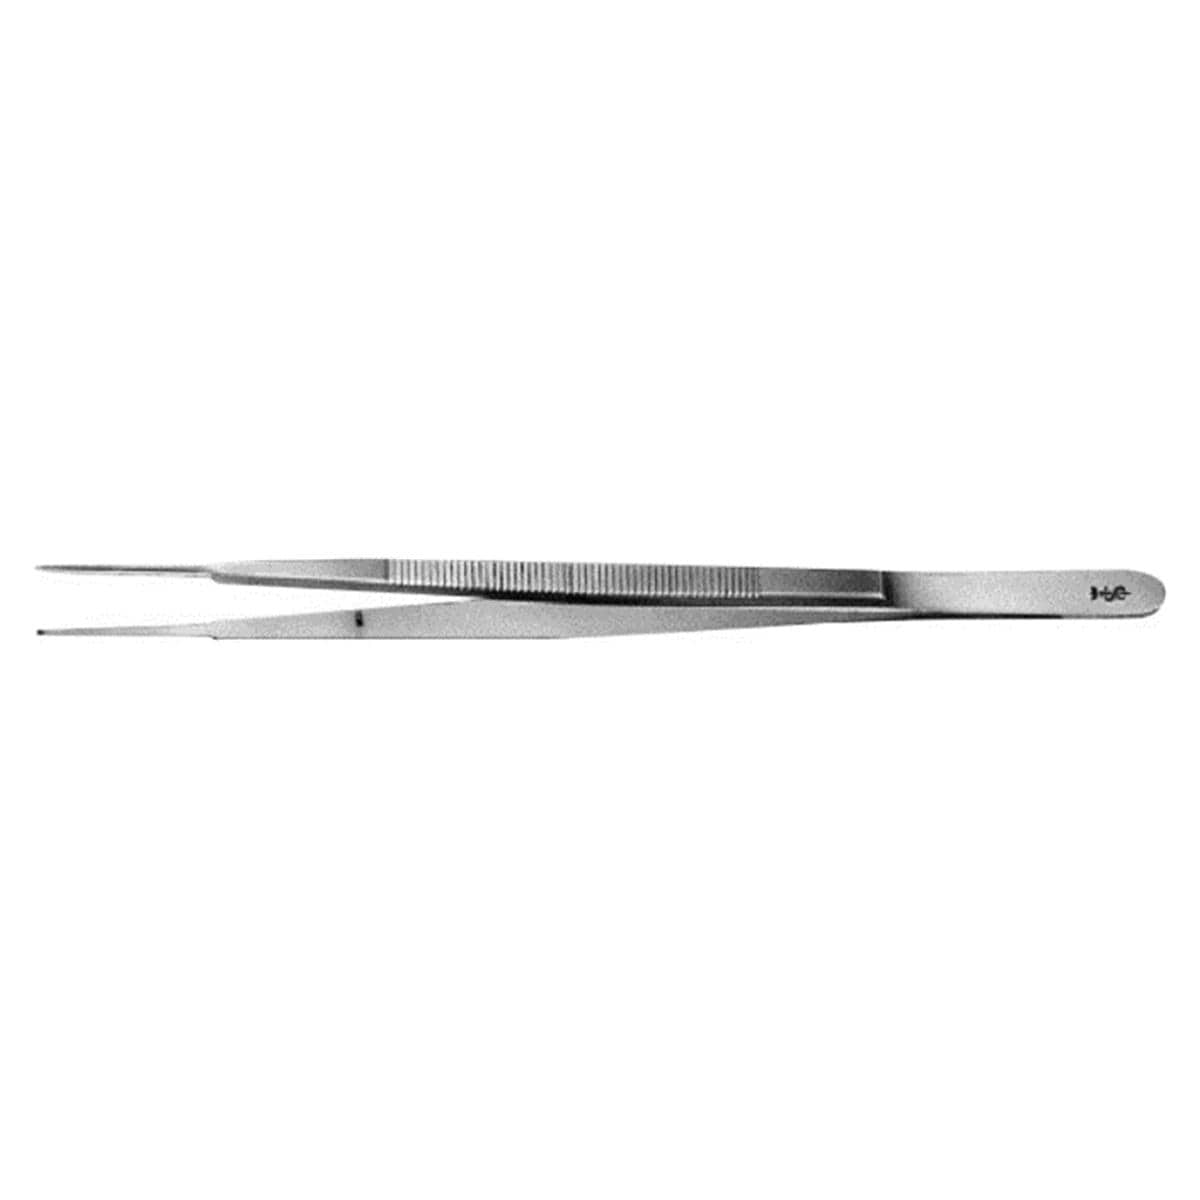 Pincet chirurgisch Gerald recht - BD662R, 17,5 cm